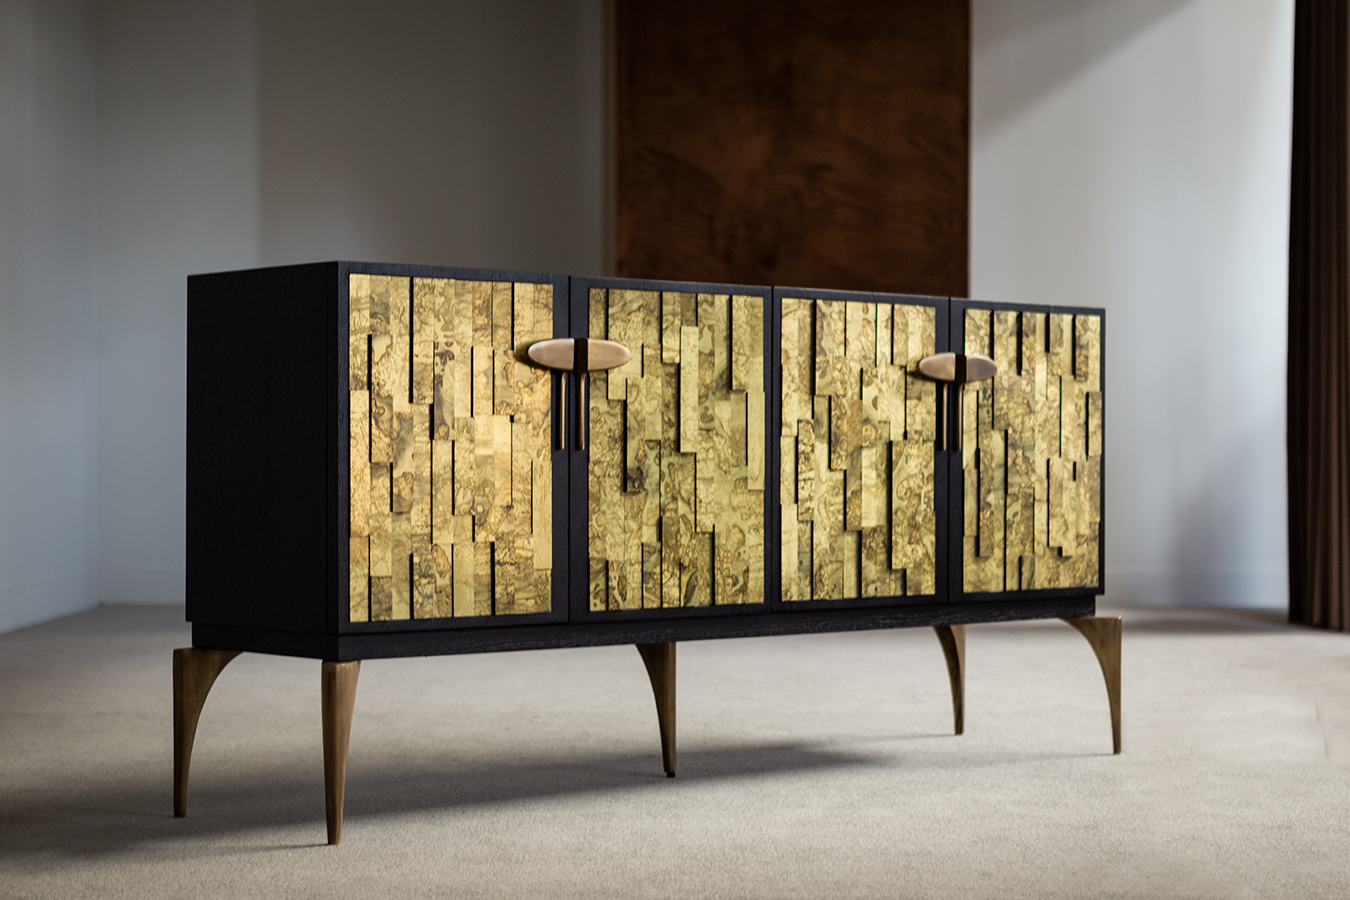 1377-853-cabinets-tenoch-sideboard-hamiltonconte-gallery2-20200326154612.jpg